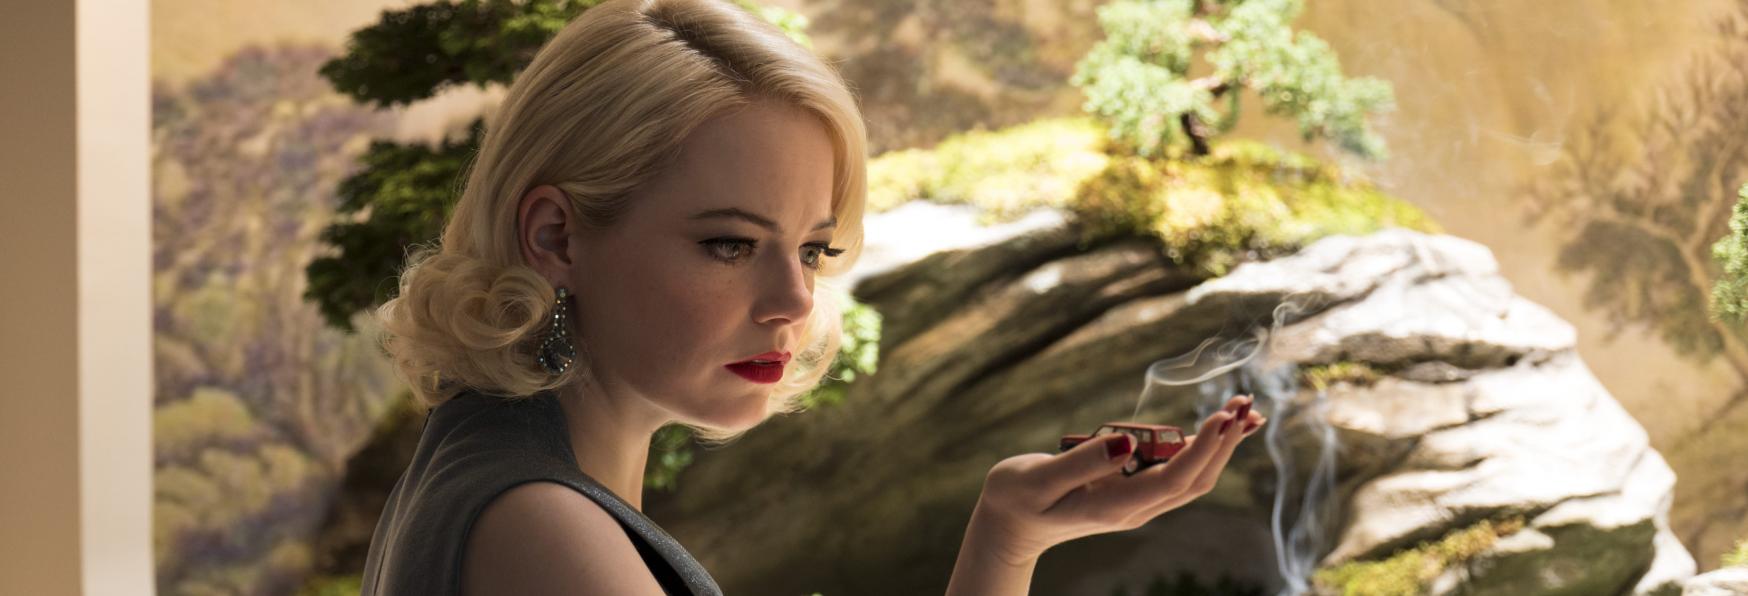 The Curse: Emma Stone sarà la Protagonista della nuova Serie TV